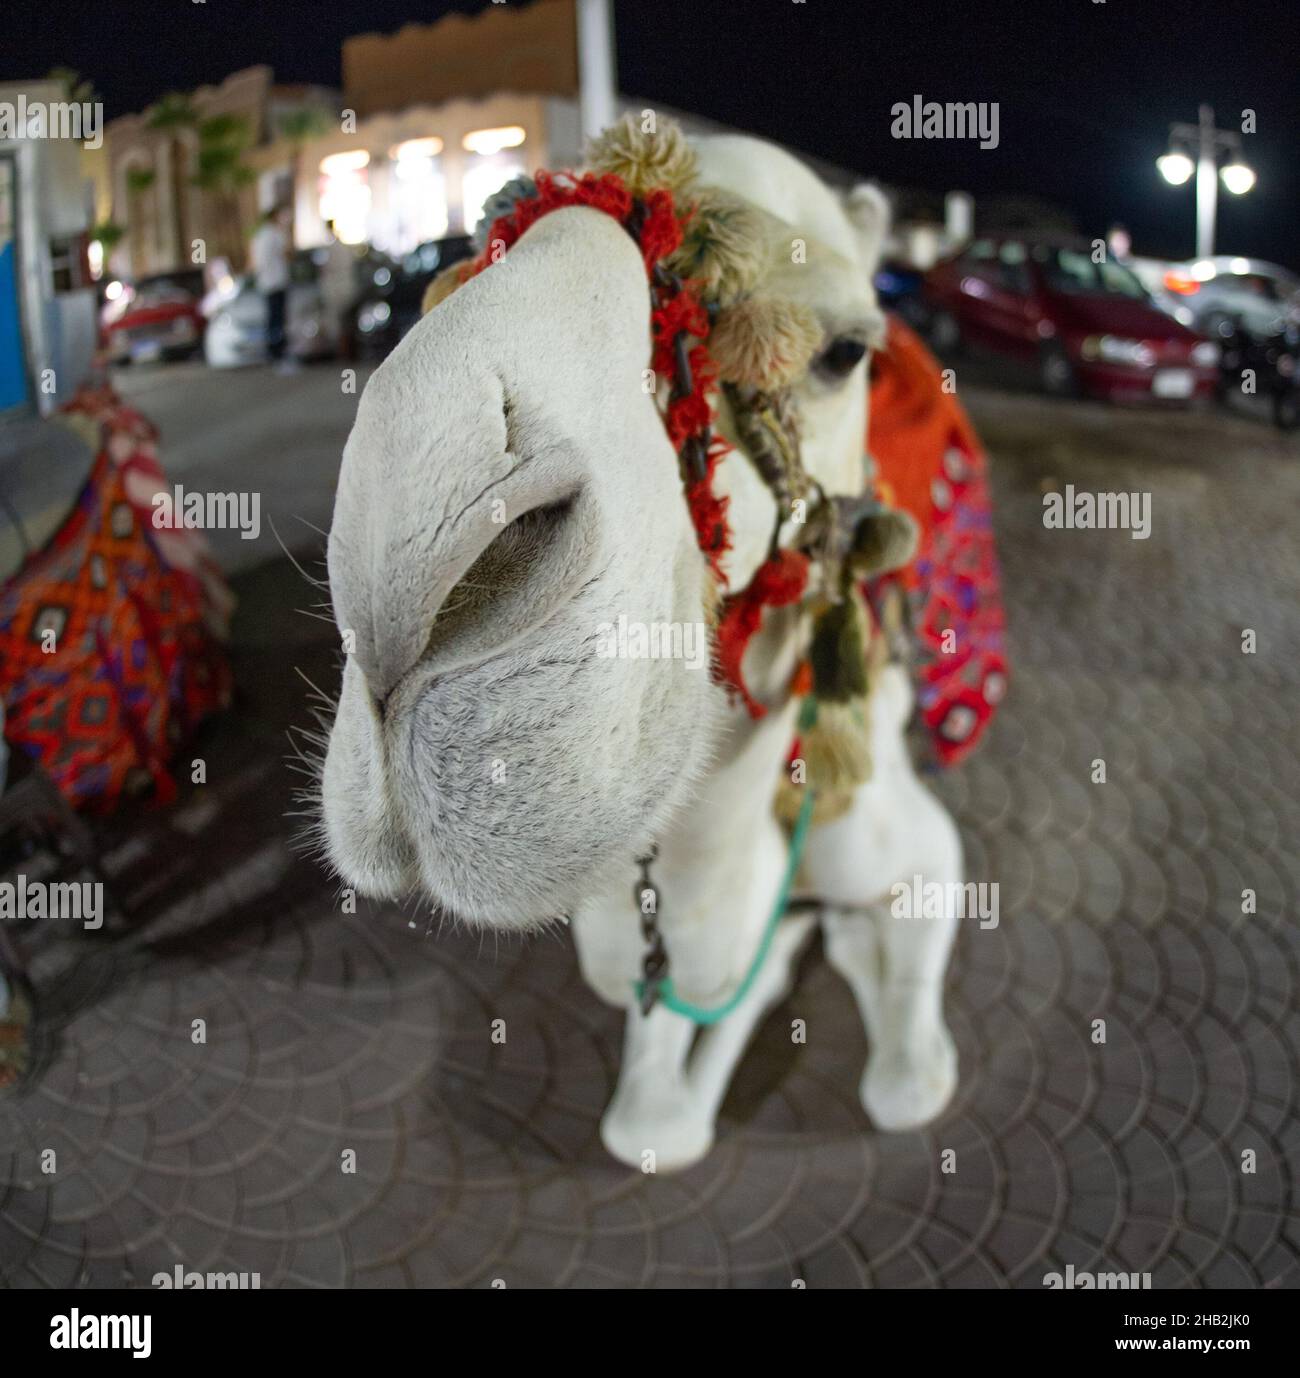 Cammello in Hurgada Egitto fotografato con obiettivo fish eye molto divertente Foto Stock